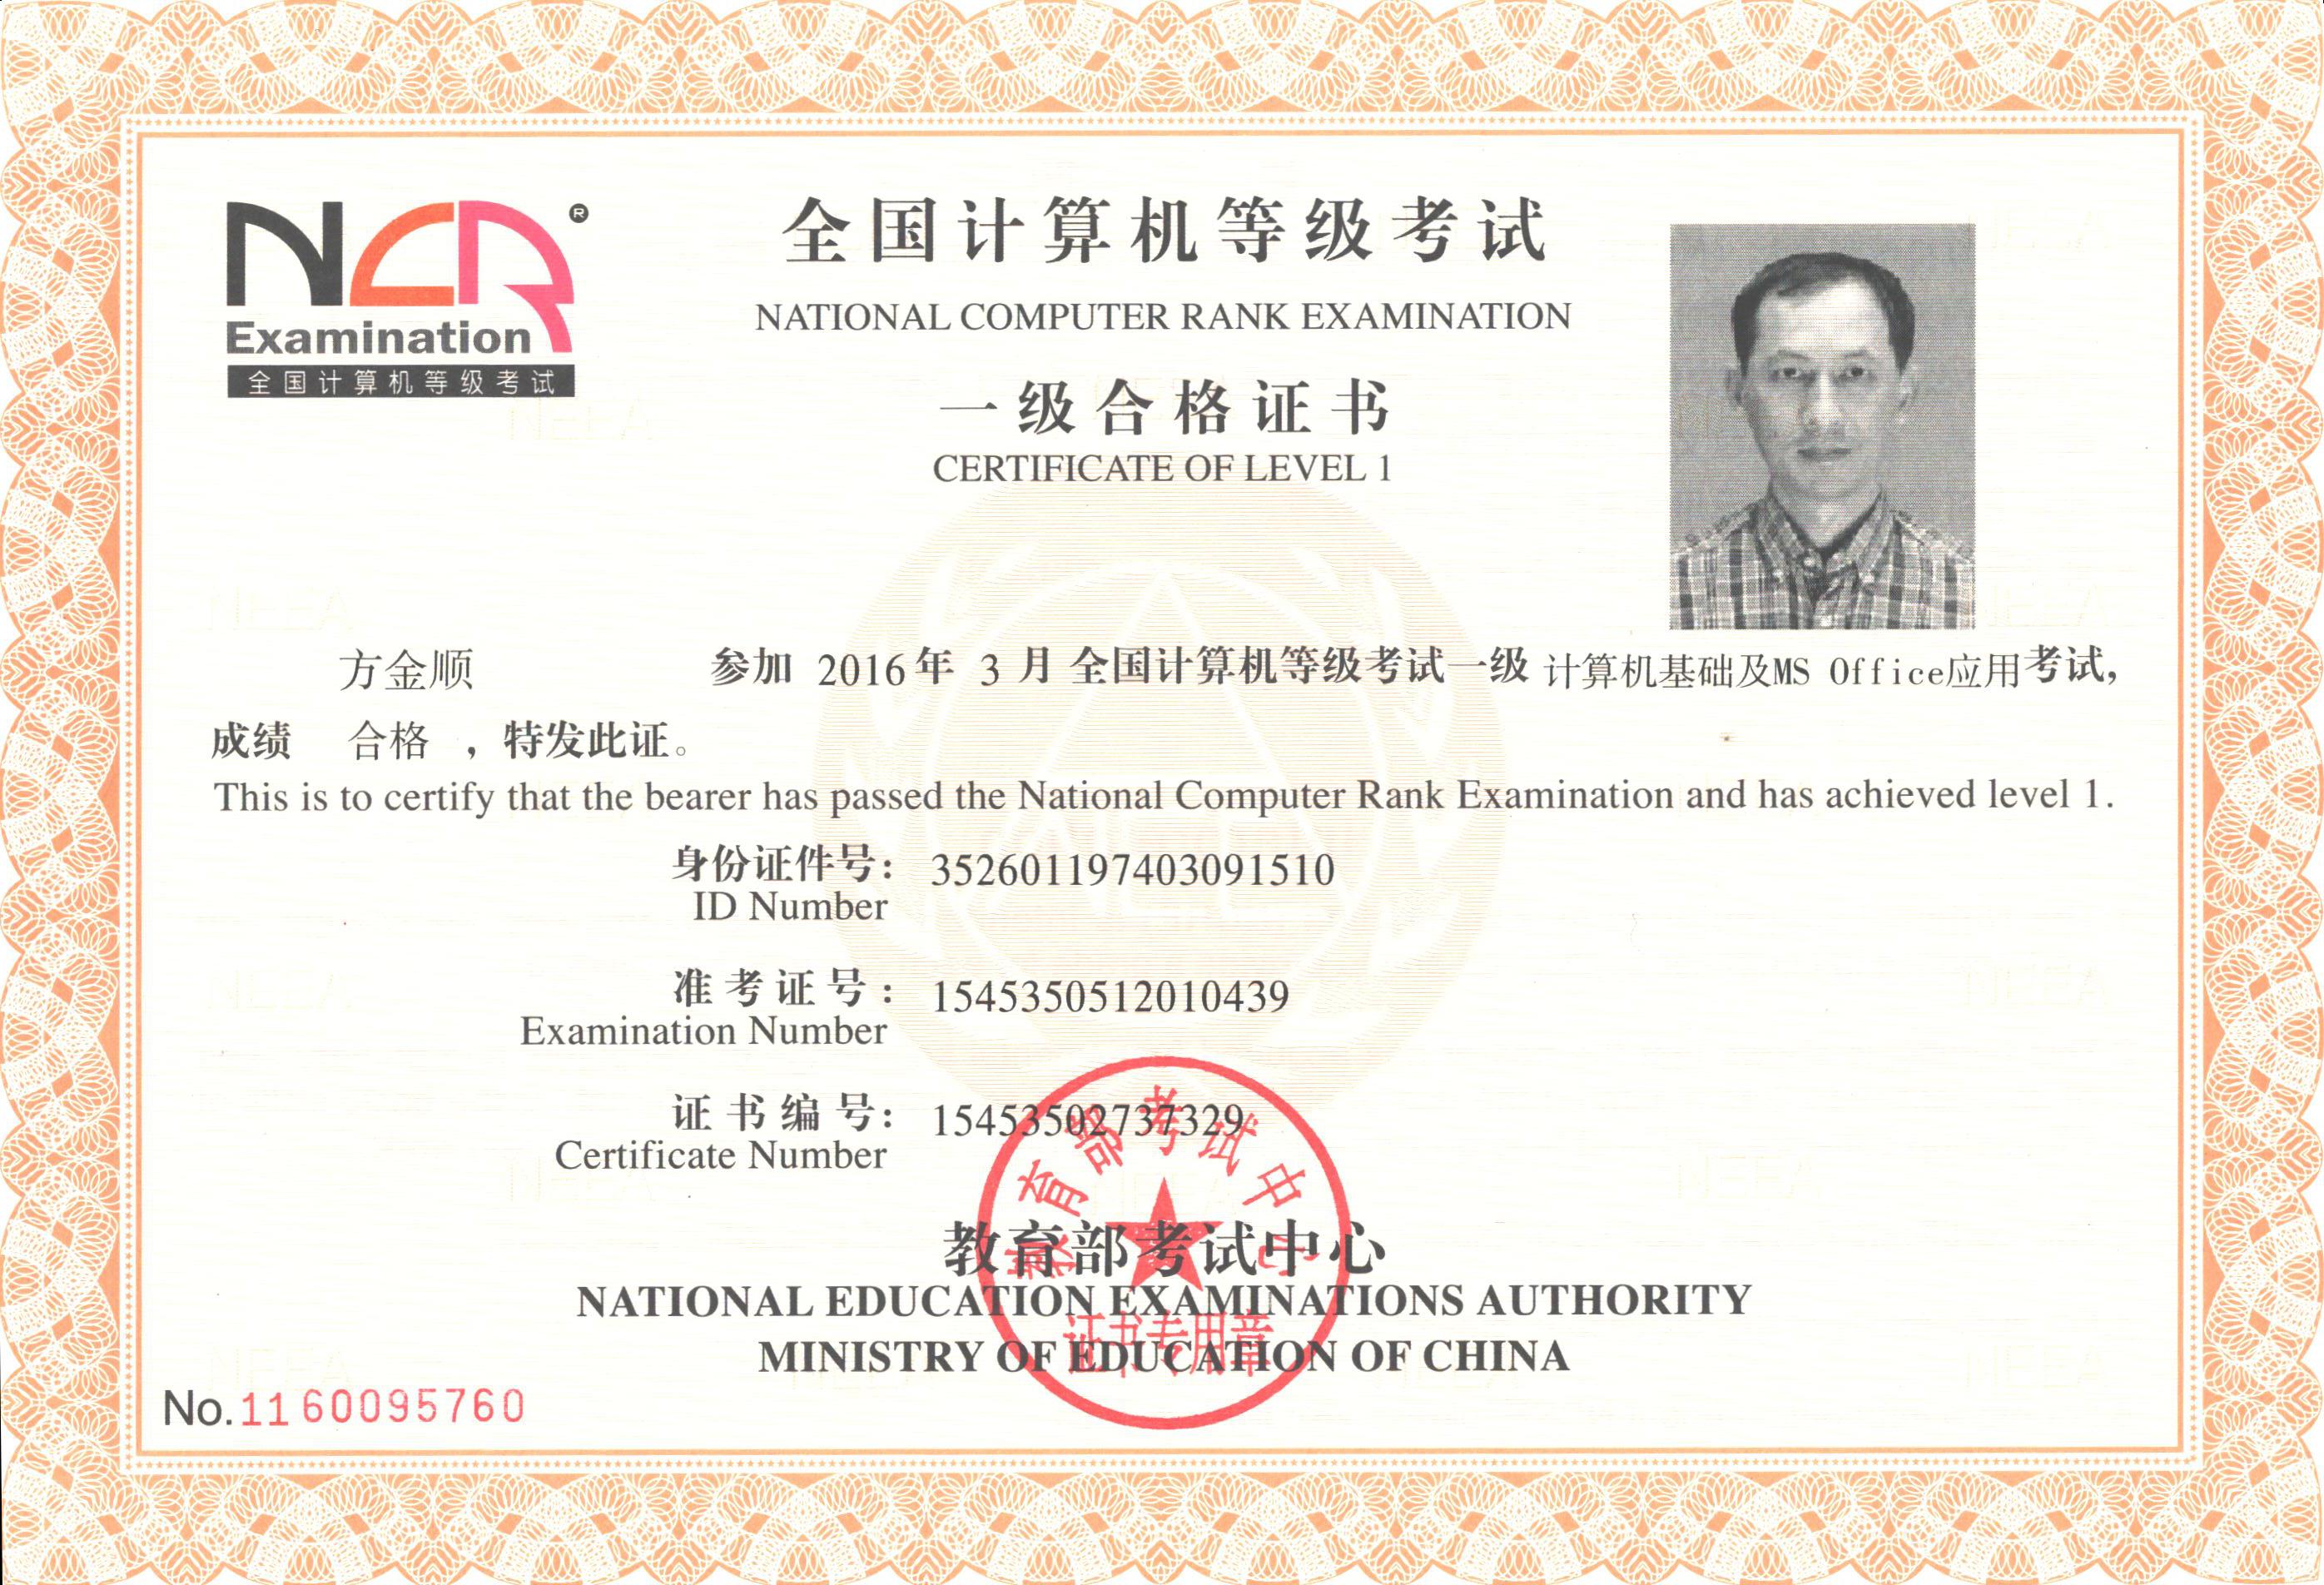 2015年天津计算机等级证书查询系统:chaxunneeaeducn